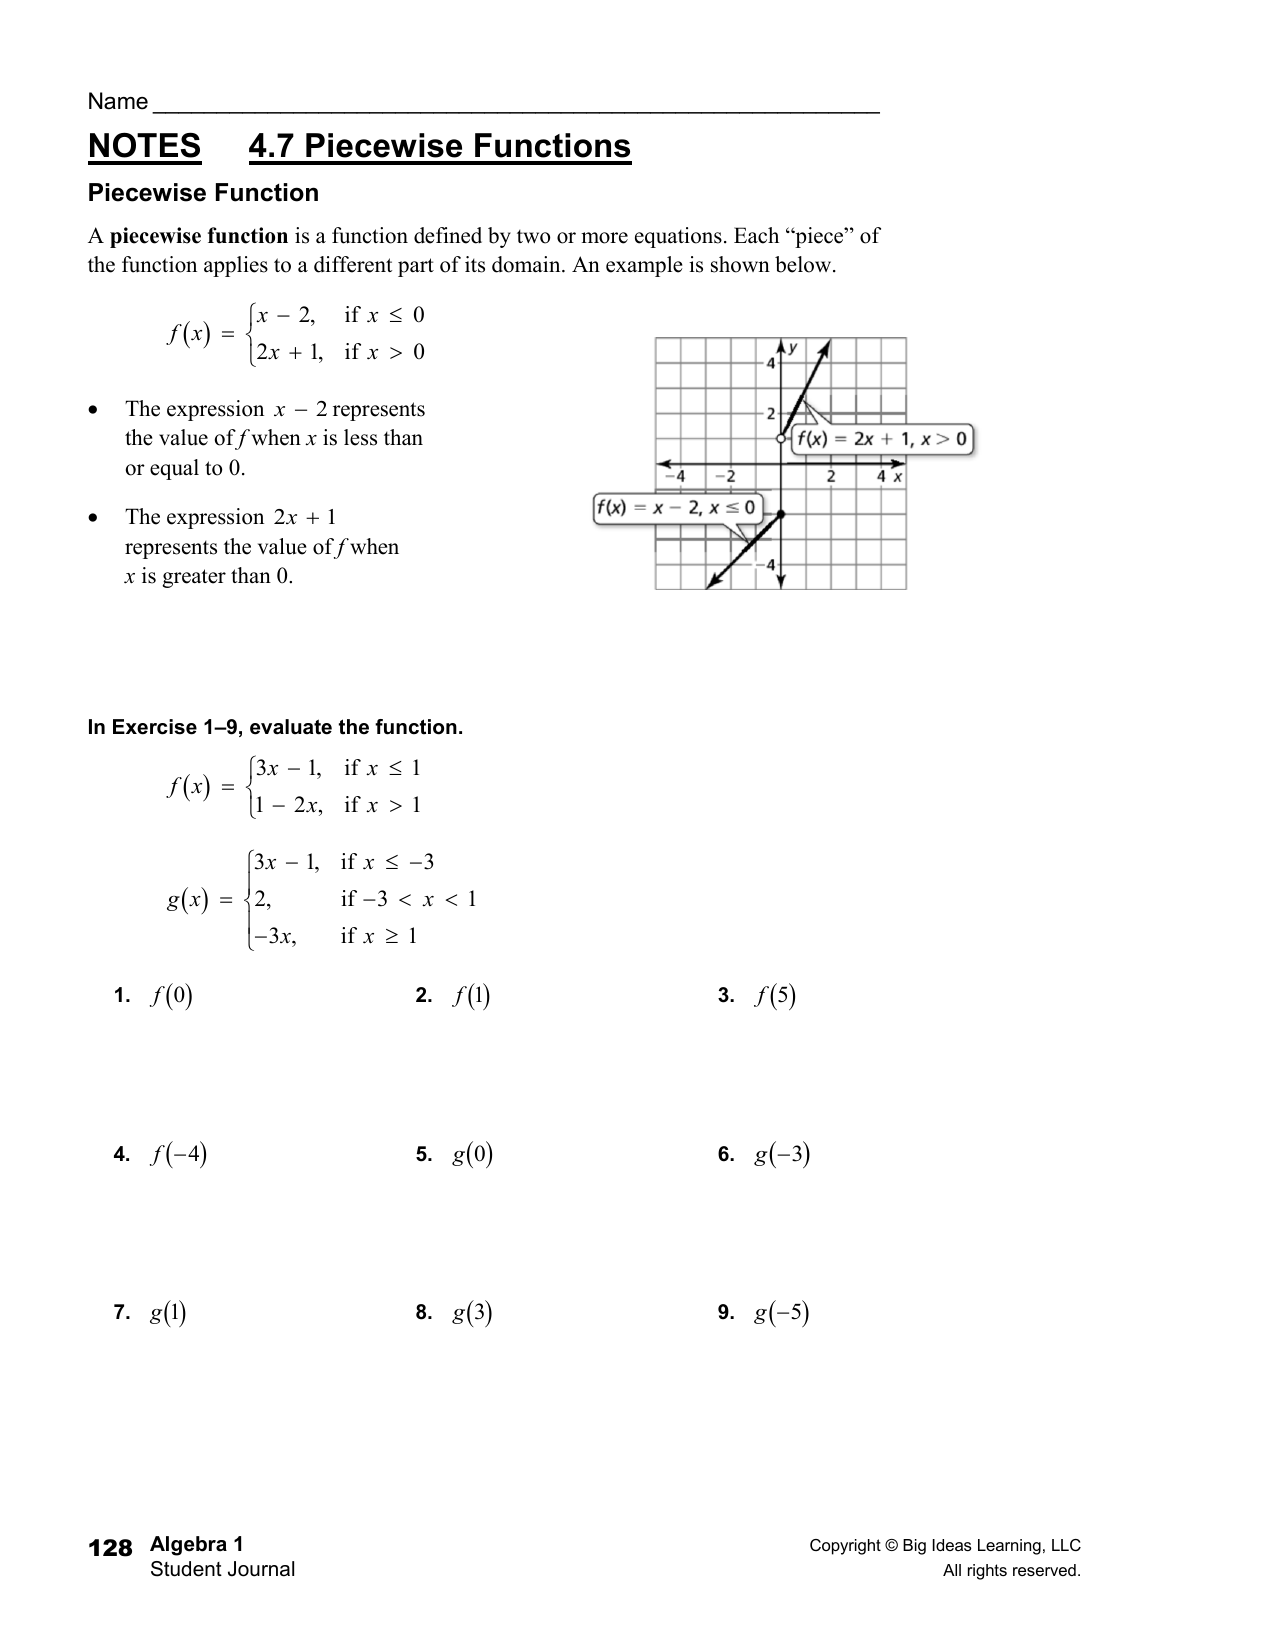 Piecewise Functions Homework For Evaluating Functions Worksheet Algebra 1